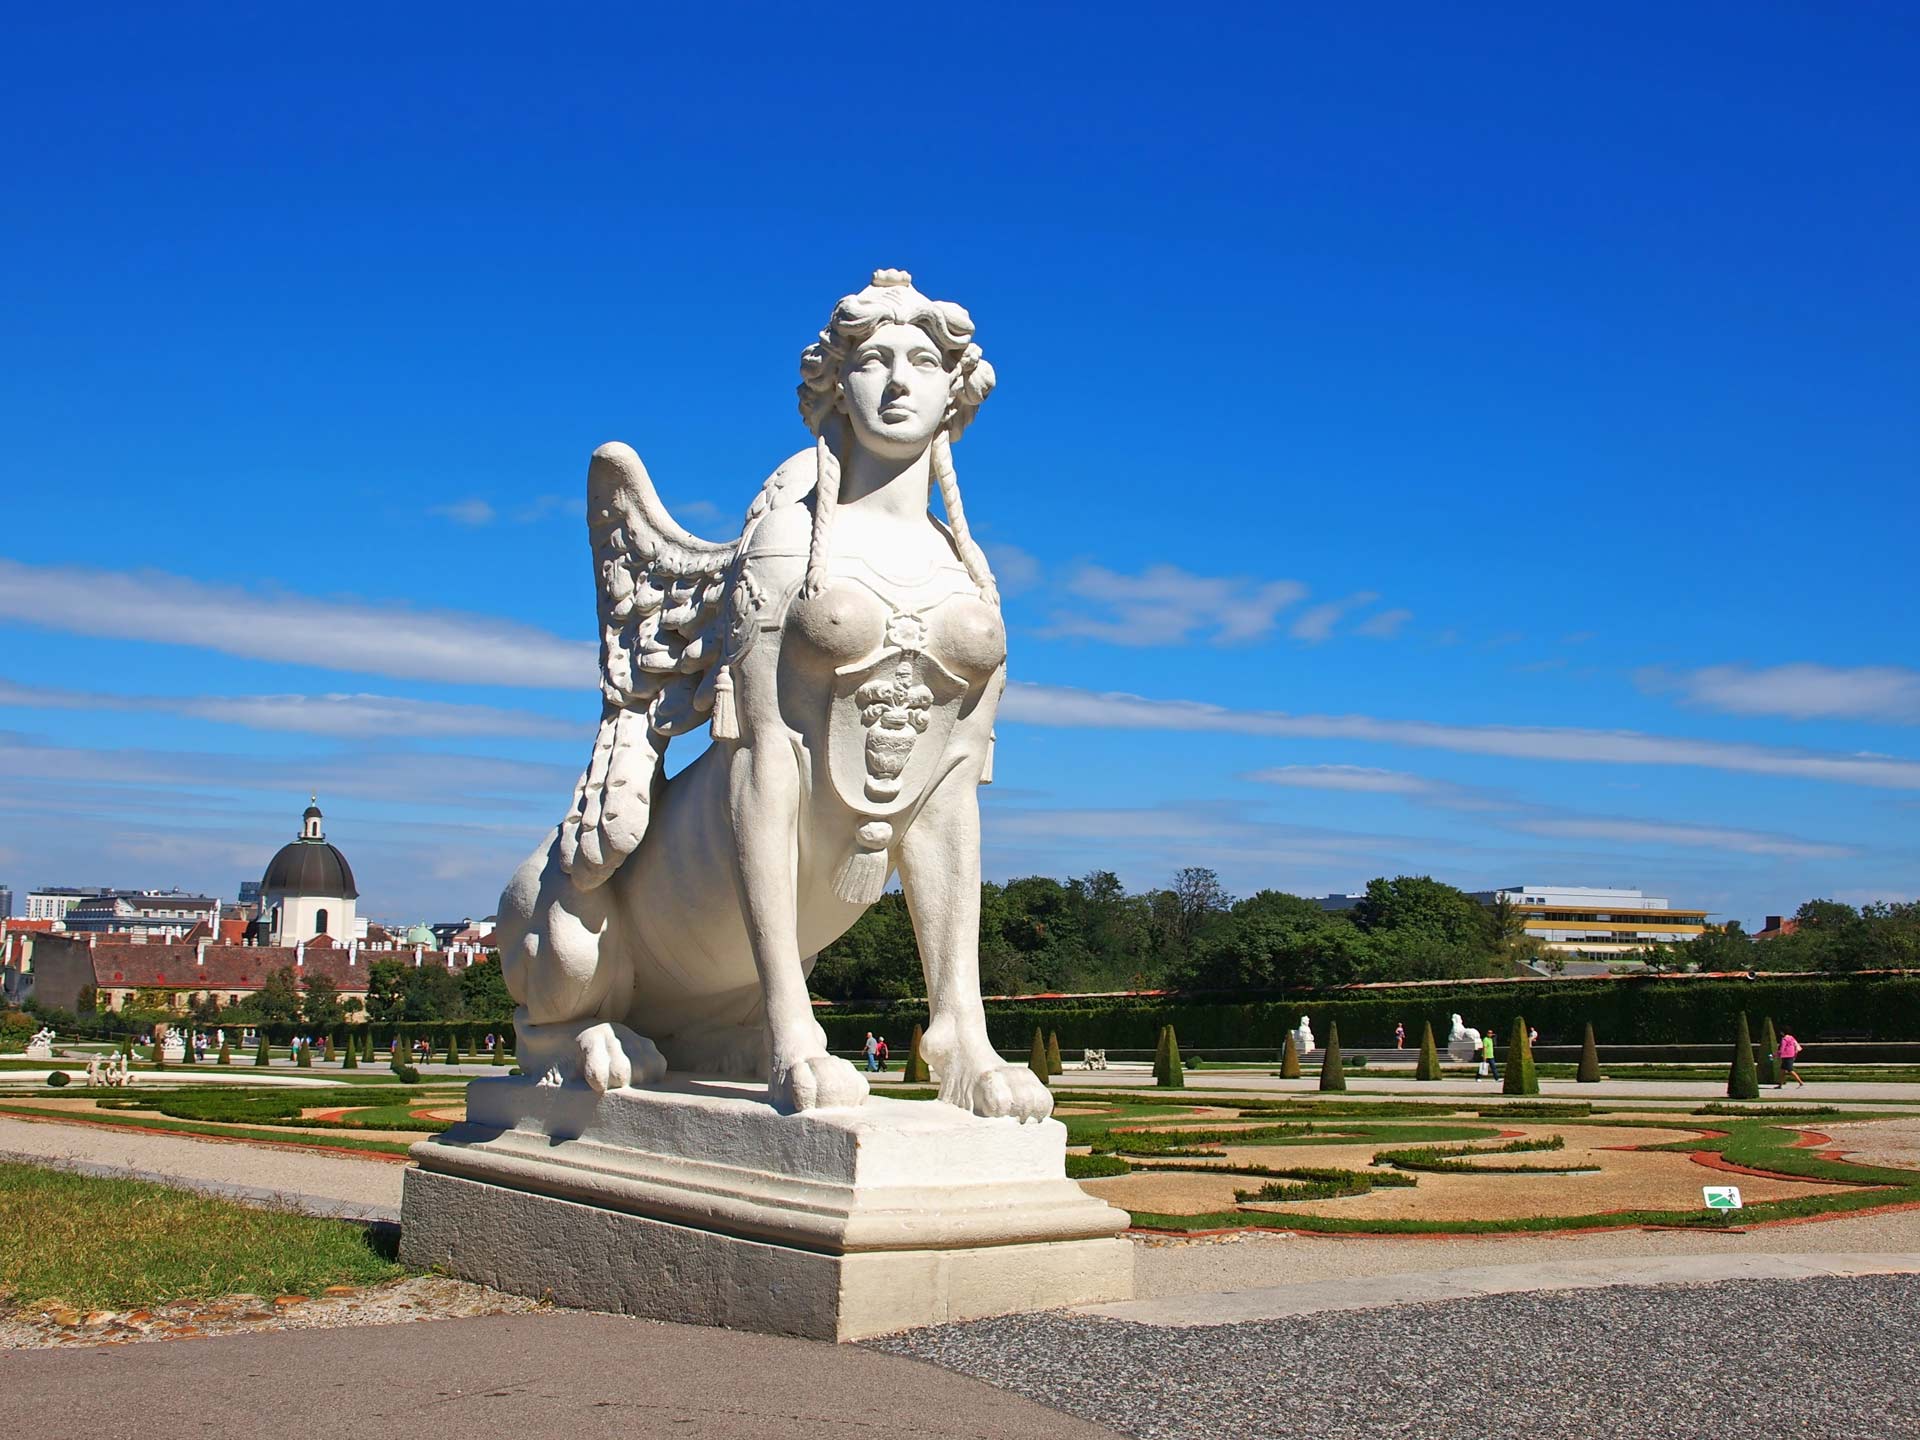 Sphinx statue in Belvedere Garden,Vienna, Austria